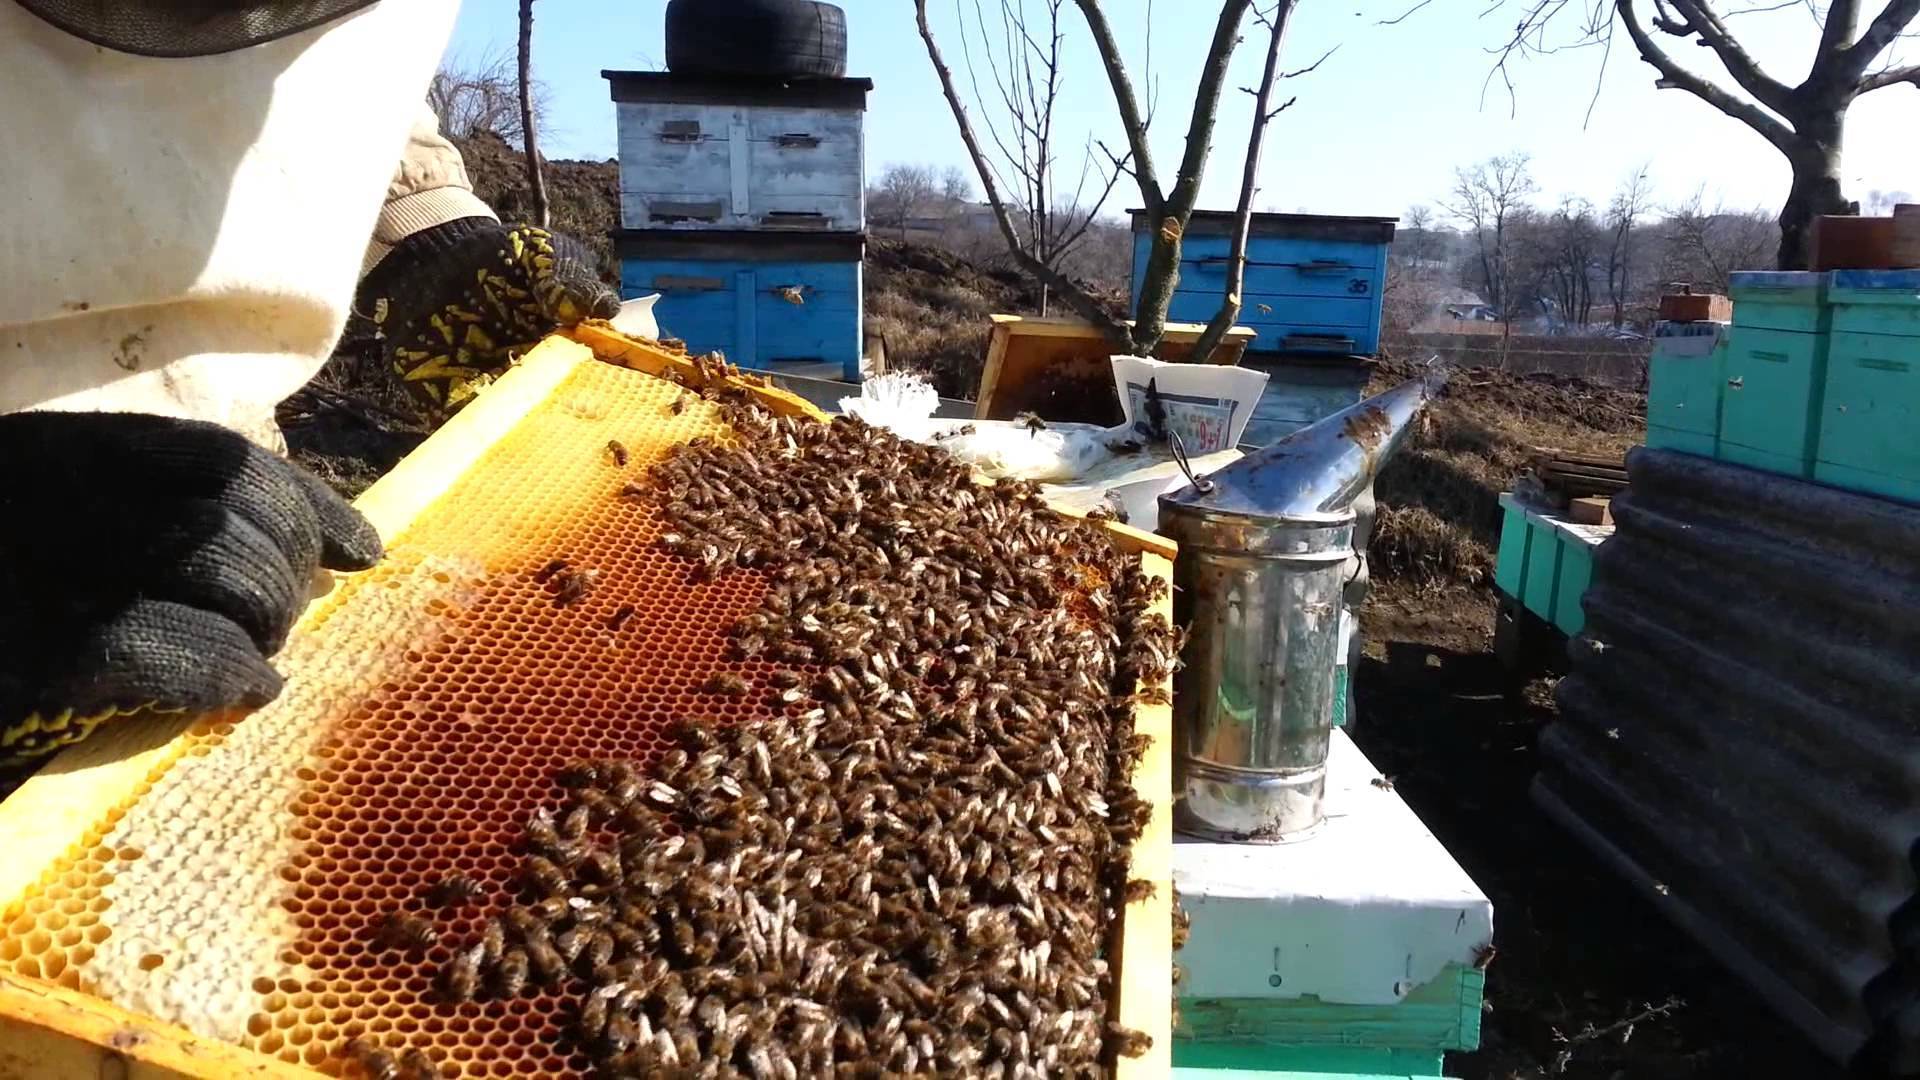 Весенние работы на пасеке и уход за пчелами весной после зимовки (бесплатное видео для начинающего пчеловода)
весенние работы на пасеке и уход за пчелами весной после зимовки (бесплатное видео для начинающего пчеловода)